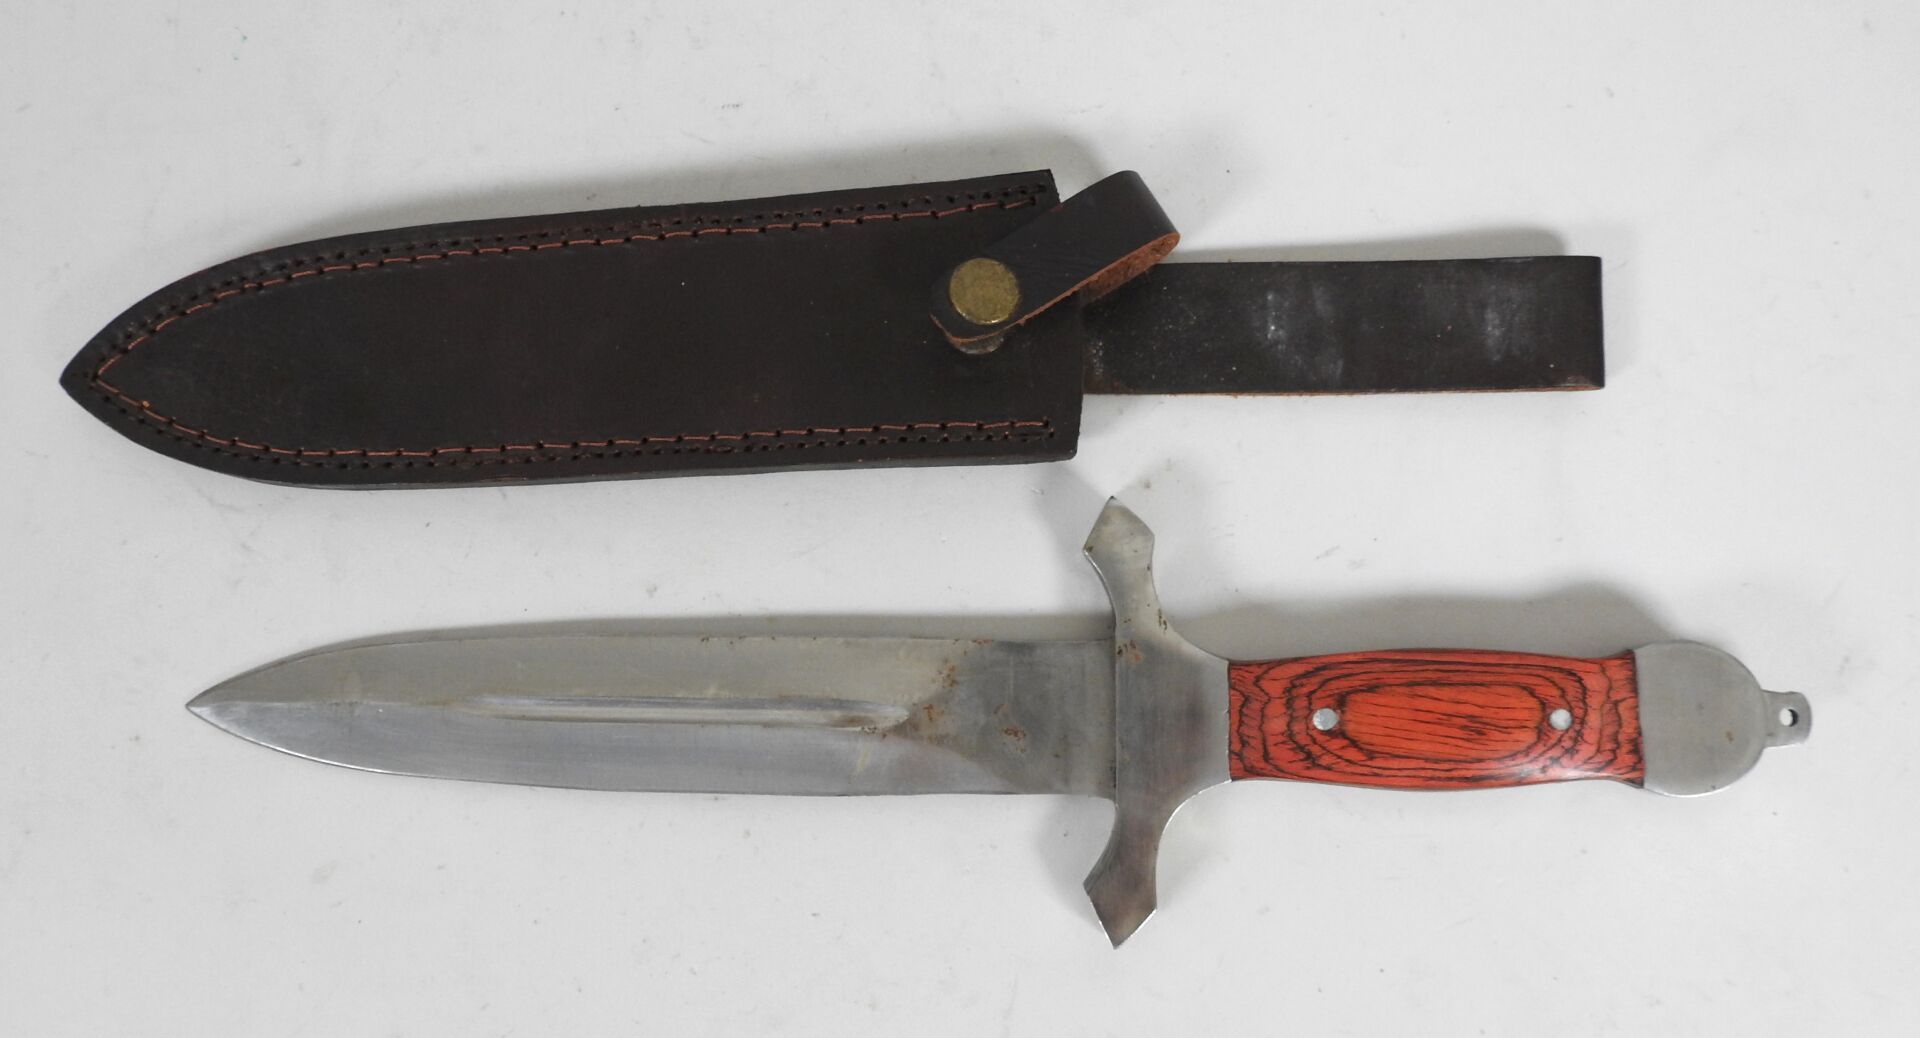 Null 狩猎匕首，20厘米不锈钢刀刃，刀柄有两块染红的木板。

带皮制刀鞘。

总长度：36厘米。